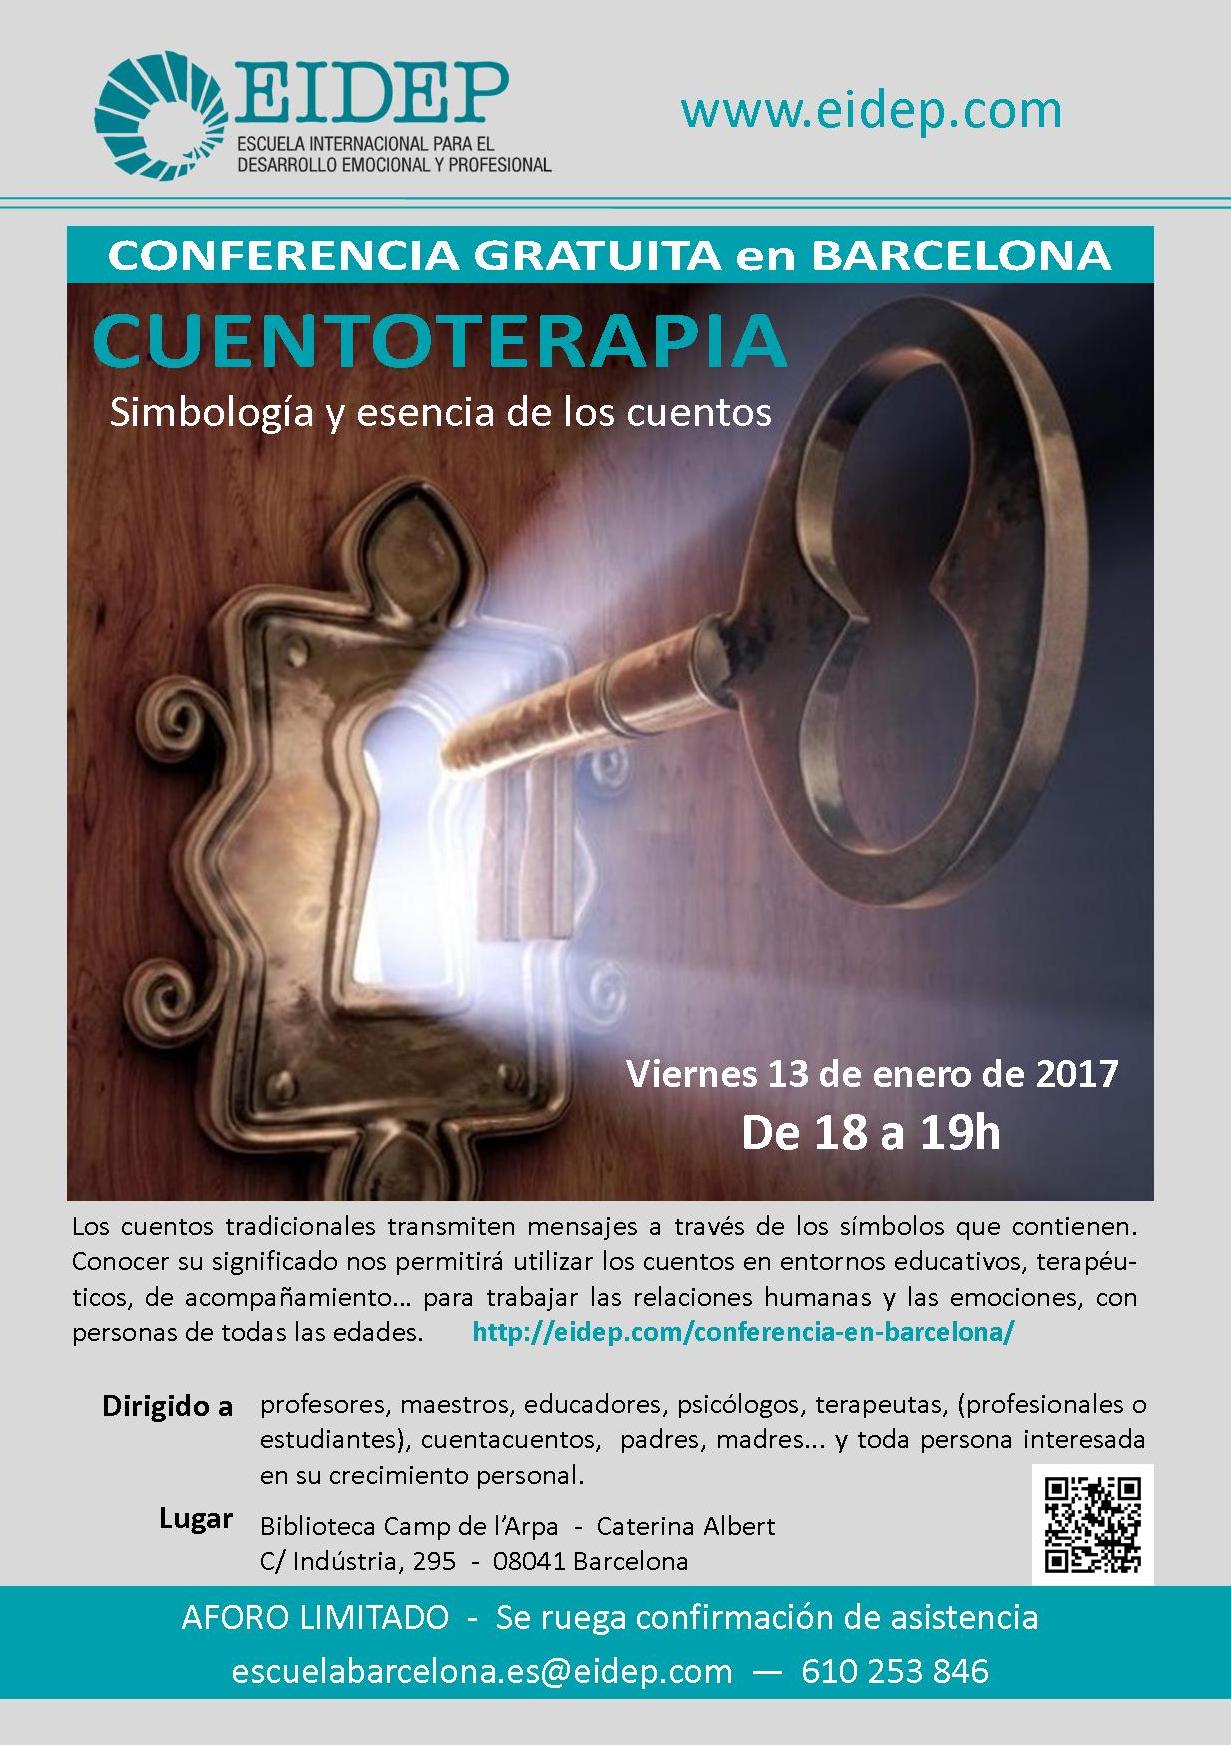 Cuentoterapia en Barcelona